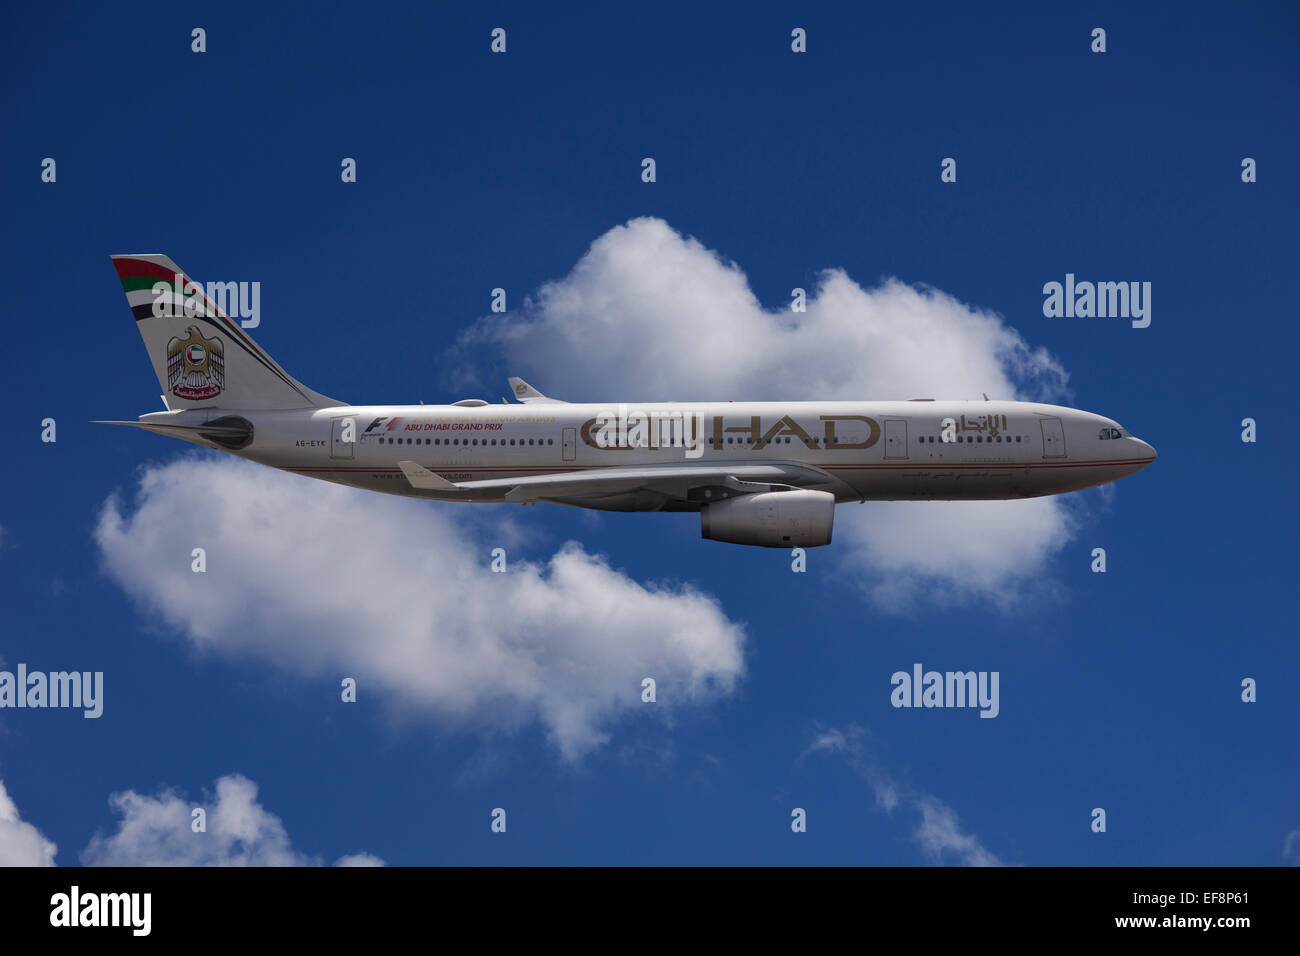 A6-EYK Etihad Airways Airbus A330-243 en vuelo contra un cielo nublado Foto de stock